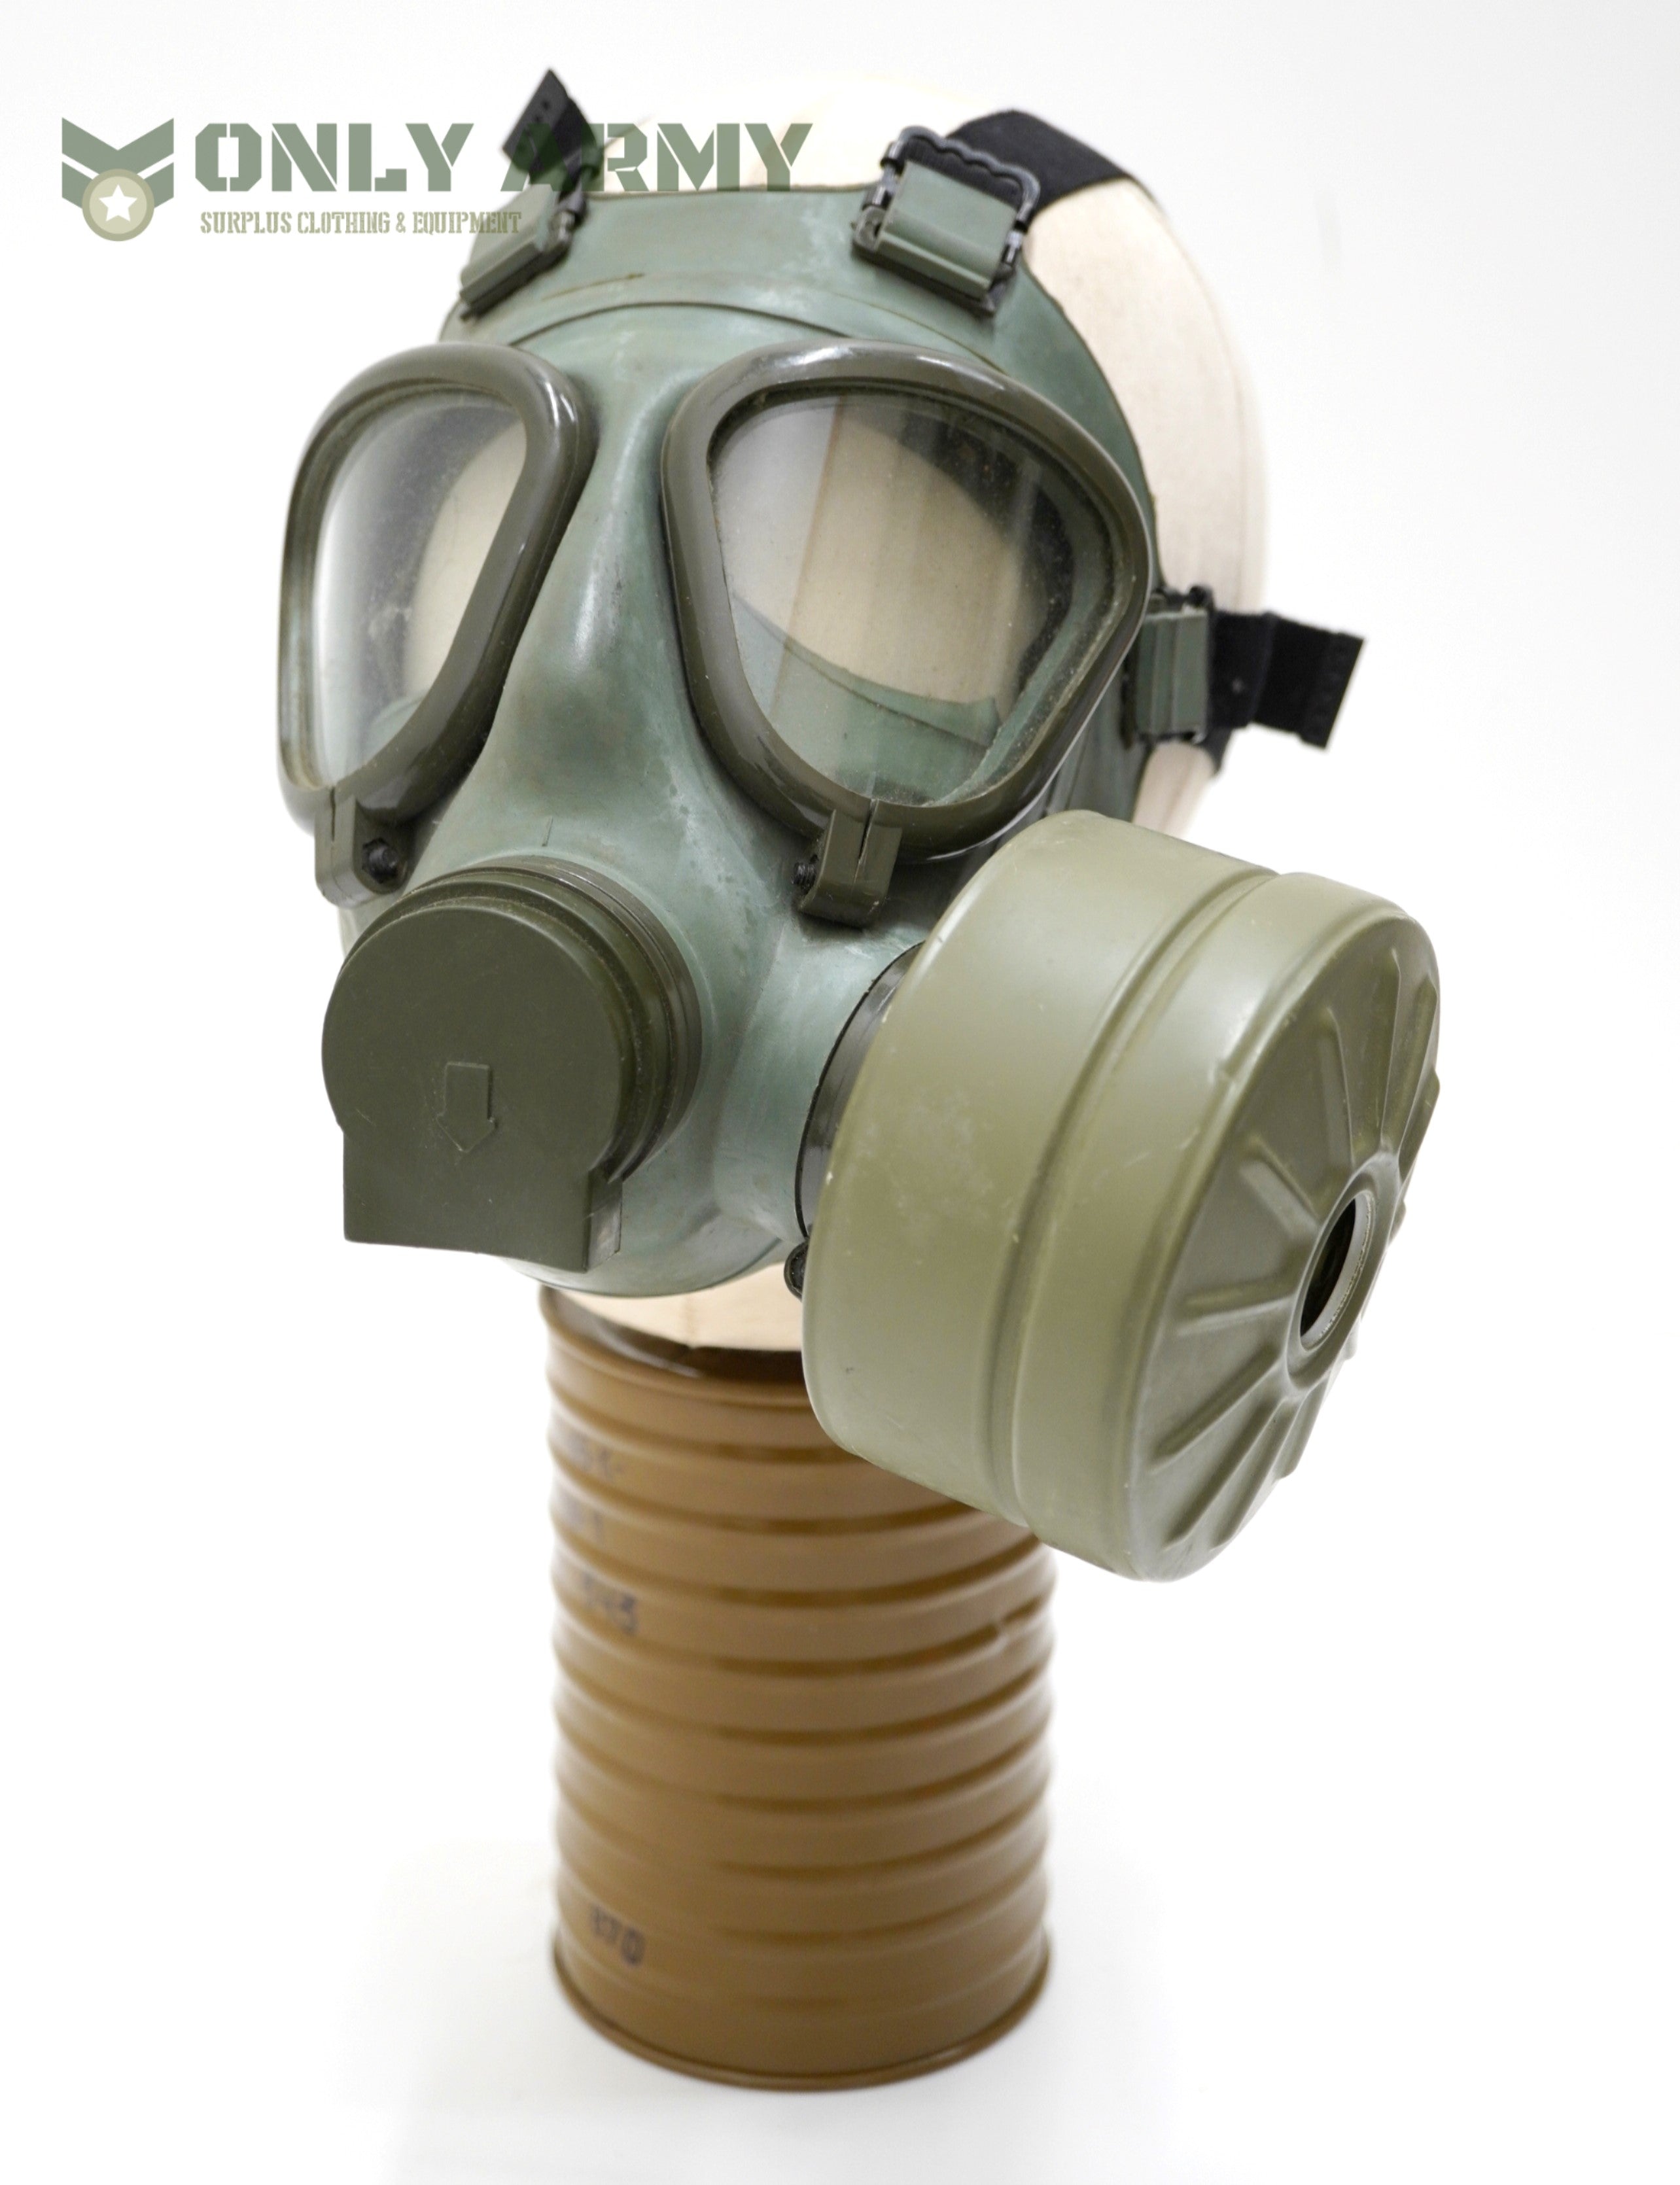 Serbian Army M2 Gas Mask